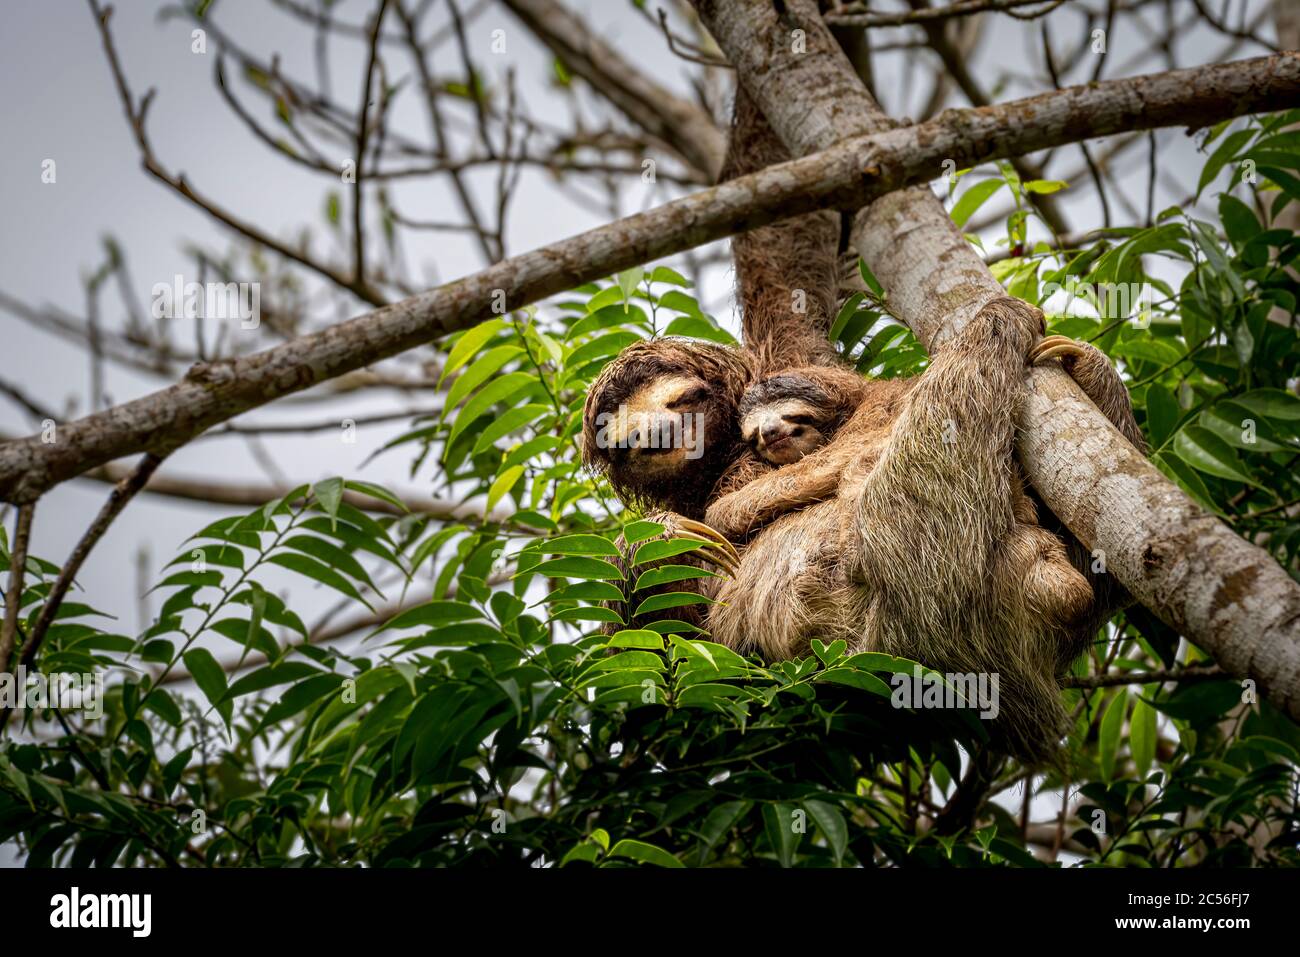 3 perezoso con el bebé subiendo una imagen de árbol Tomada en la selva tropical de Panamá Foto de stock